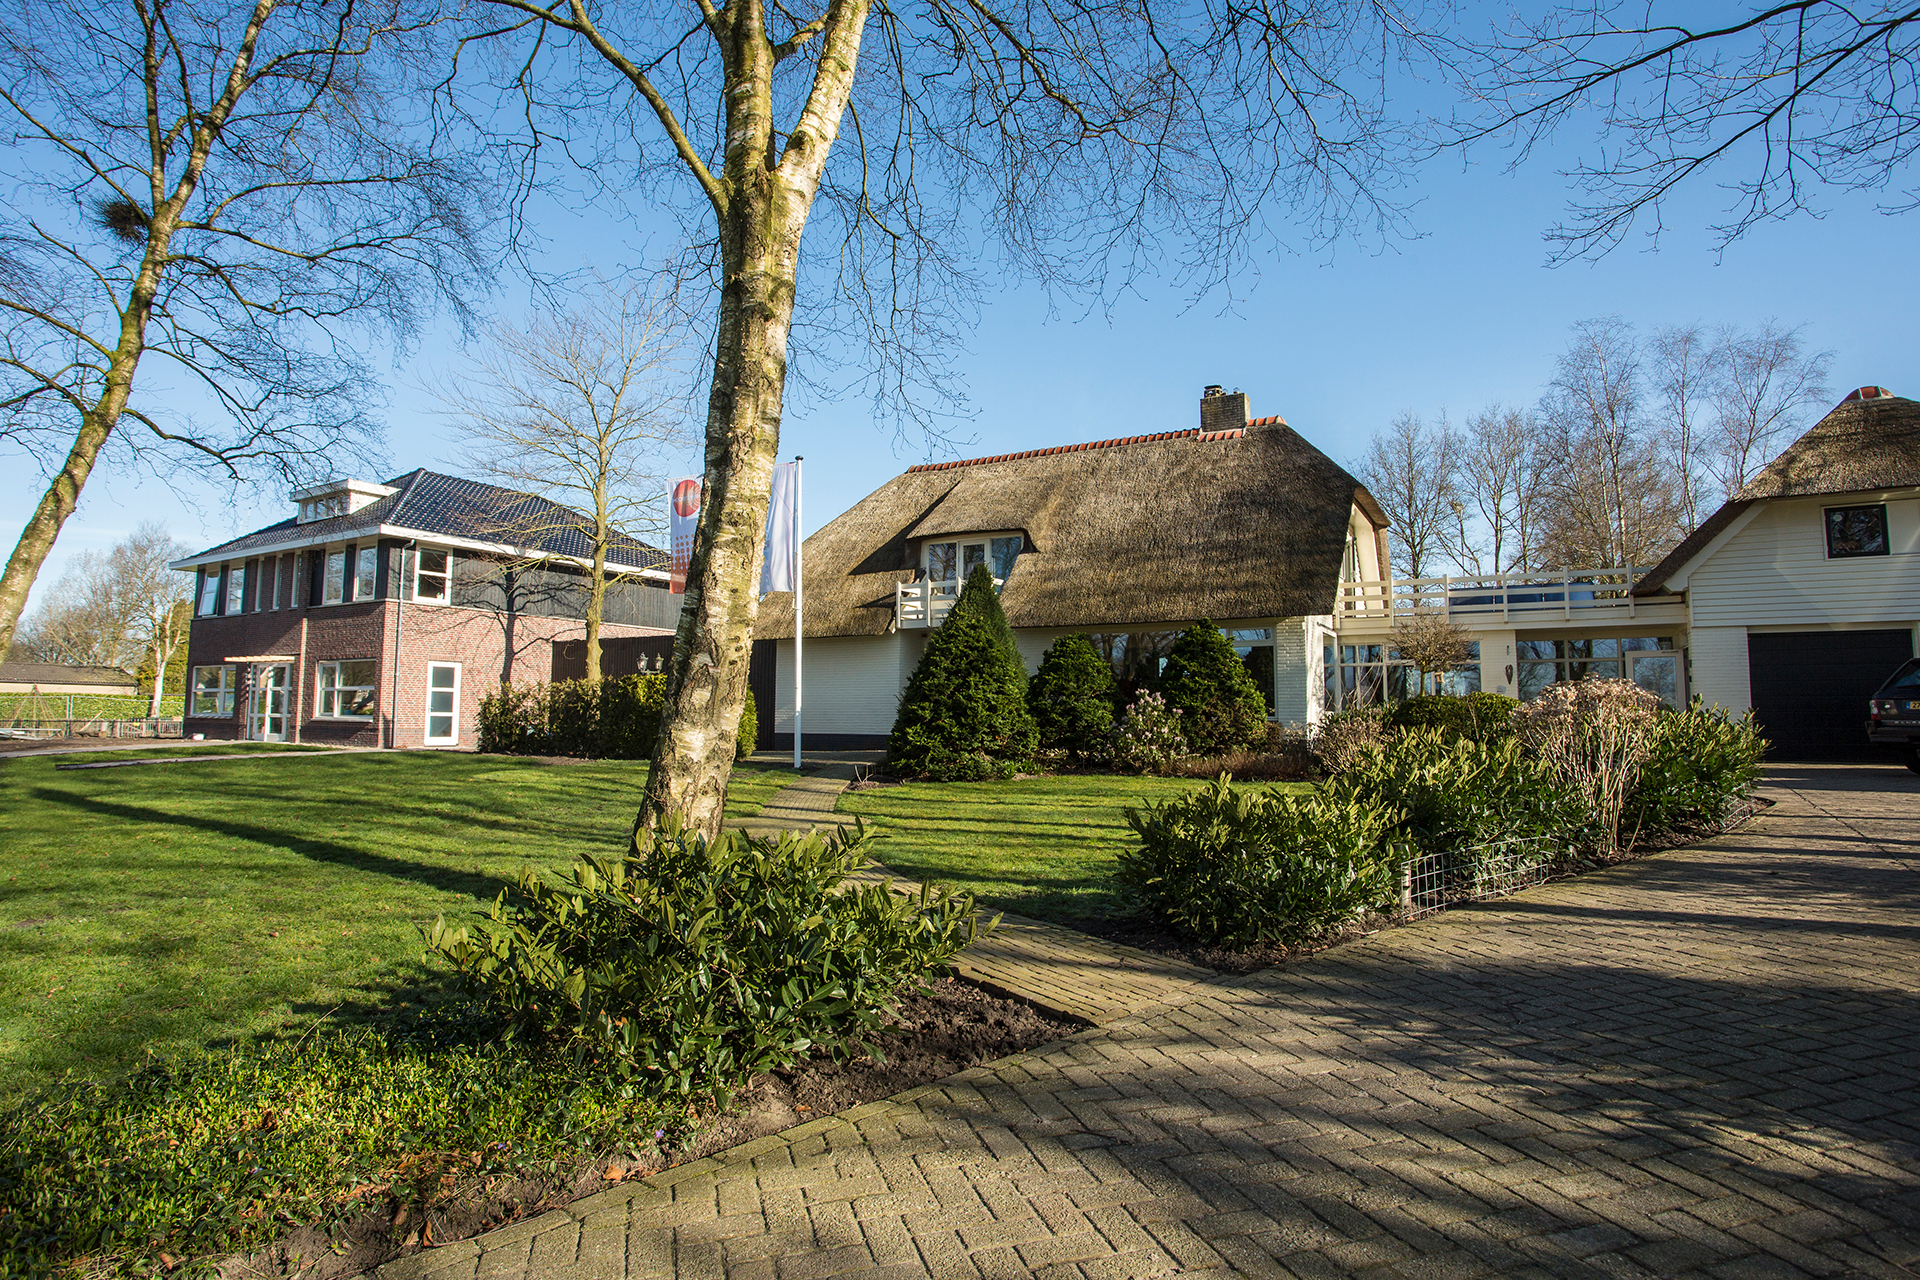  Gezinshuis De Bosk groeit door nieuwe financieringsvorm